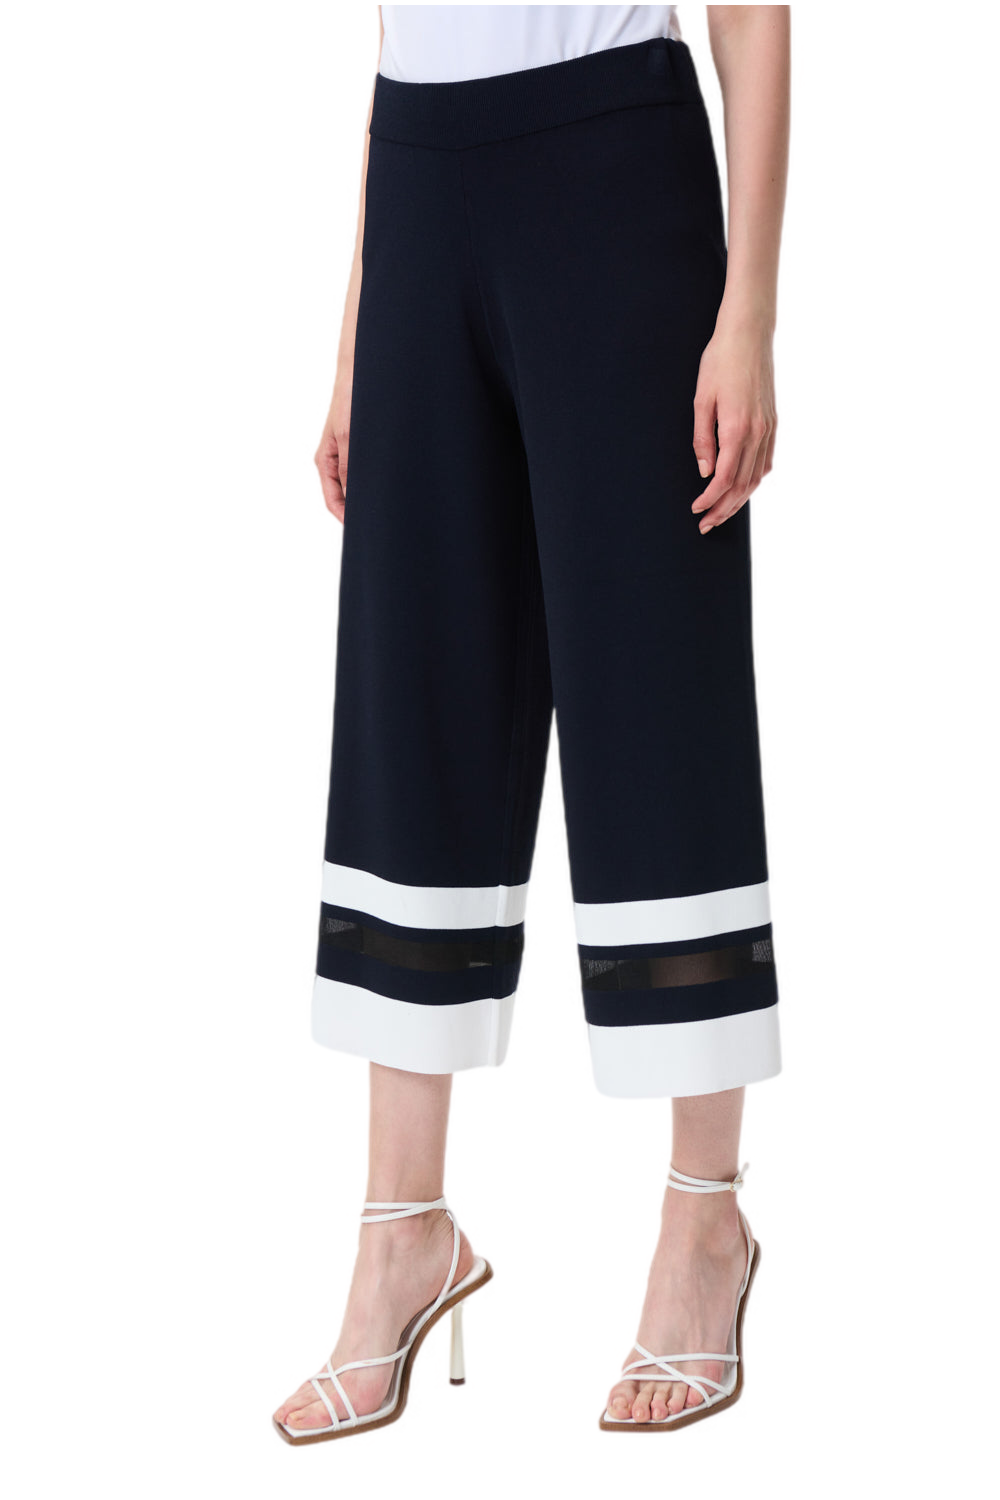 Joseph Ribkoff Knit Pants Style 231938 